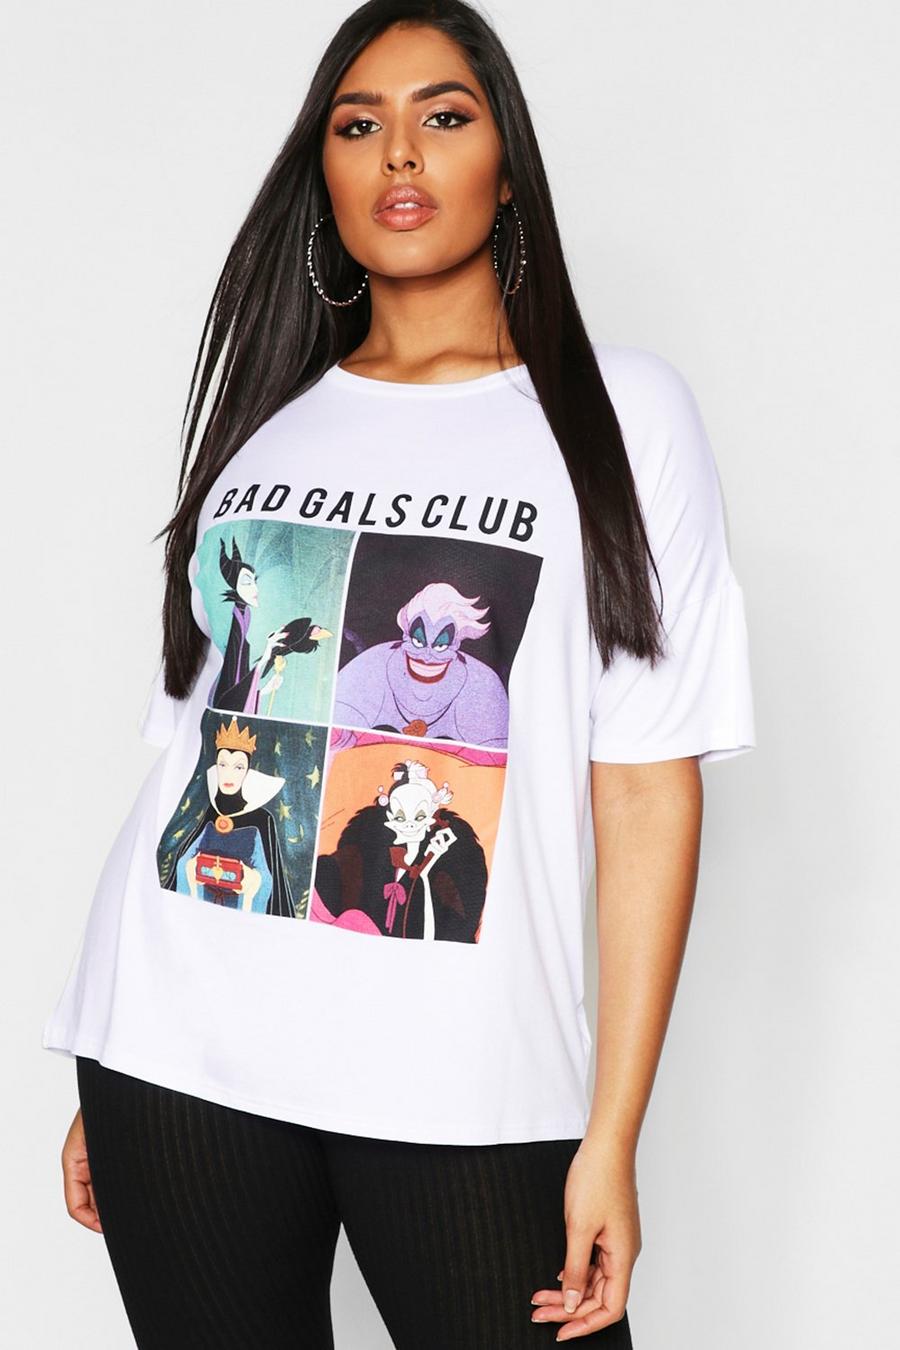 Camiseta “Bad Gals Club' de Disney Plus, Blanco image number 1